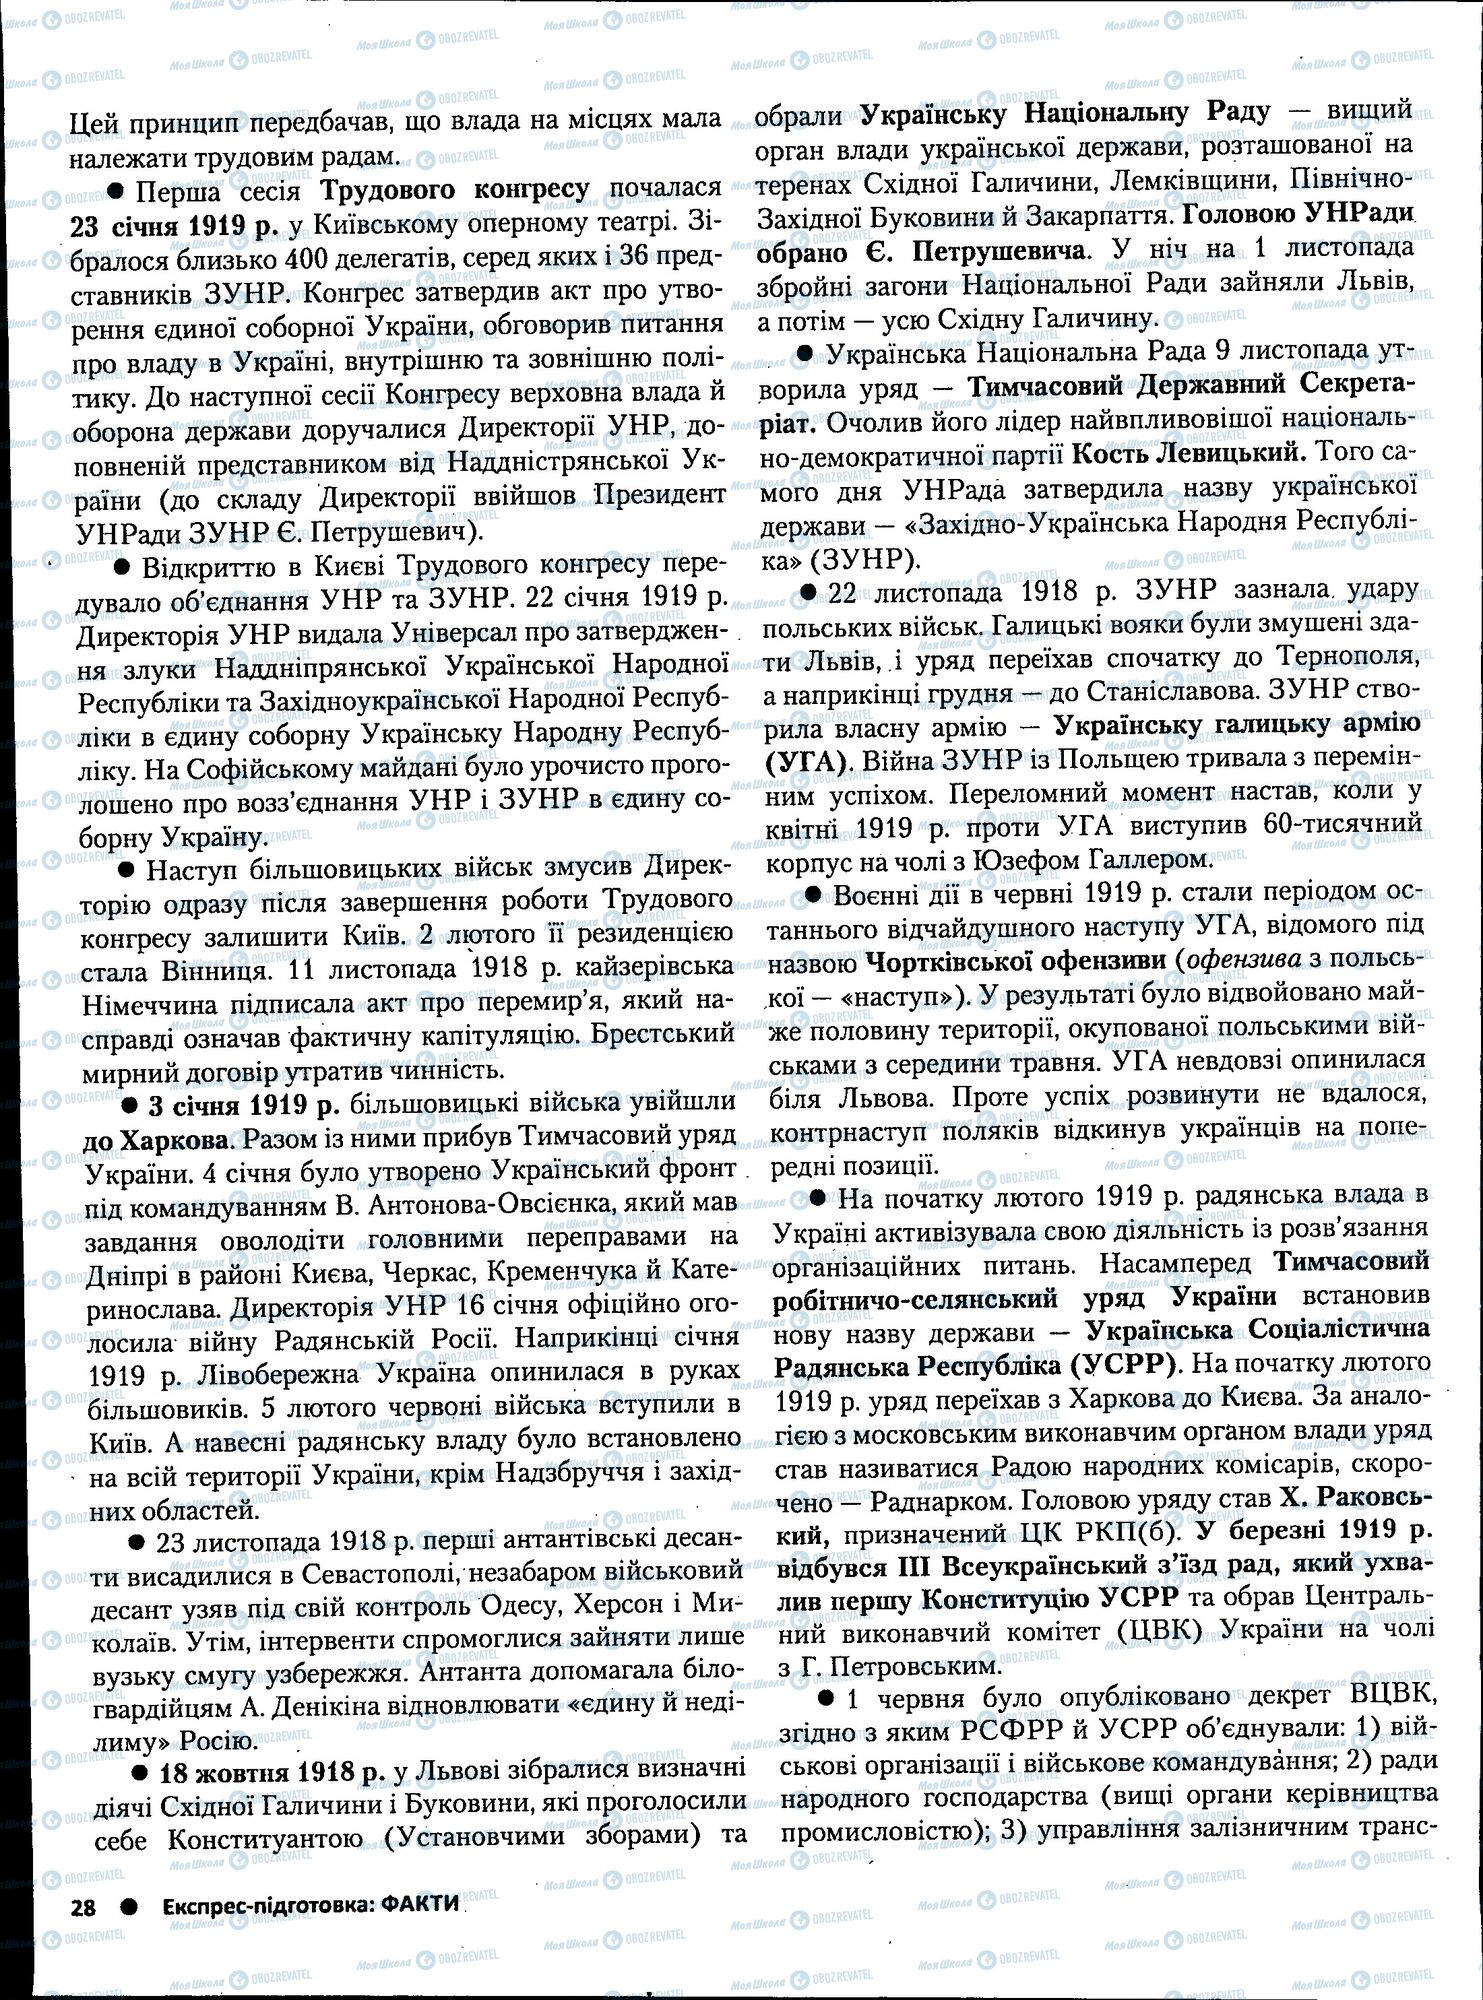 ЗНО История Украины 11 класс страница 028